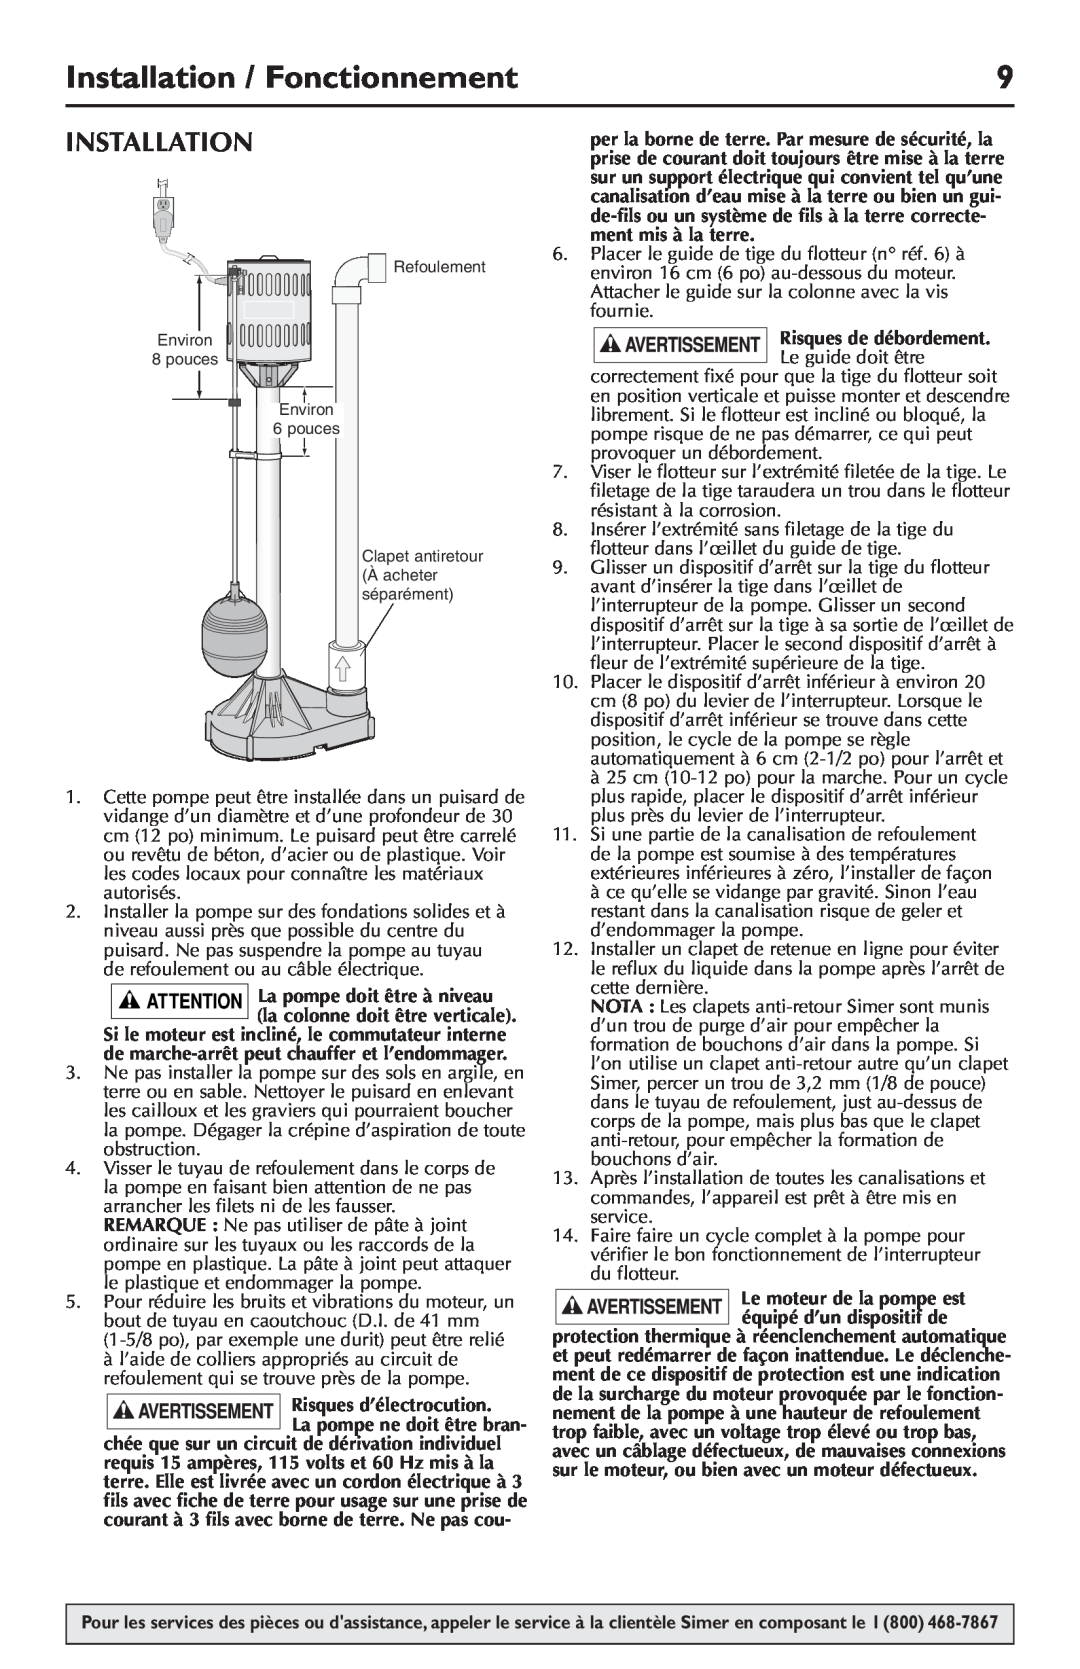 Simer Pumps 5020B-04 owner manual Installation / Fonctionnement, Risques d’électrocution, La pompe ne doit être bran 